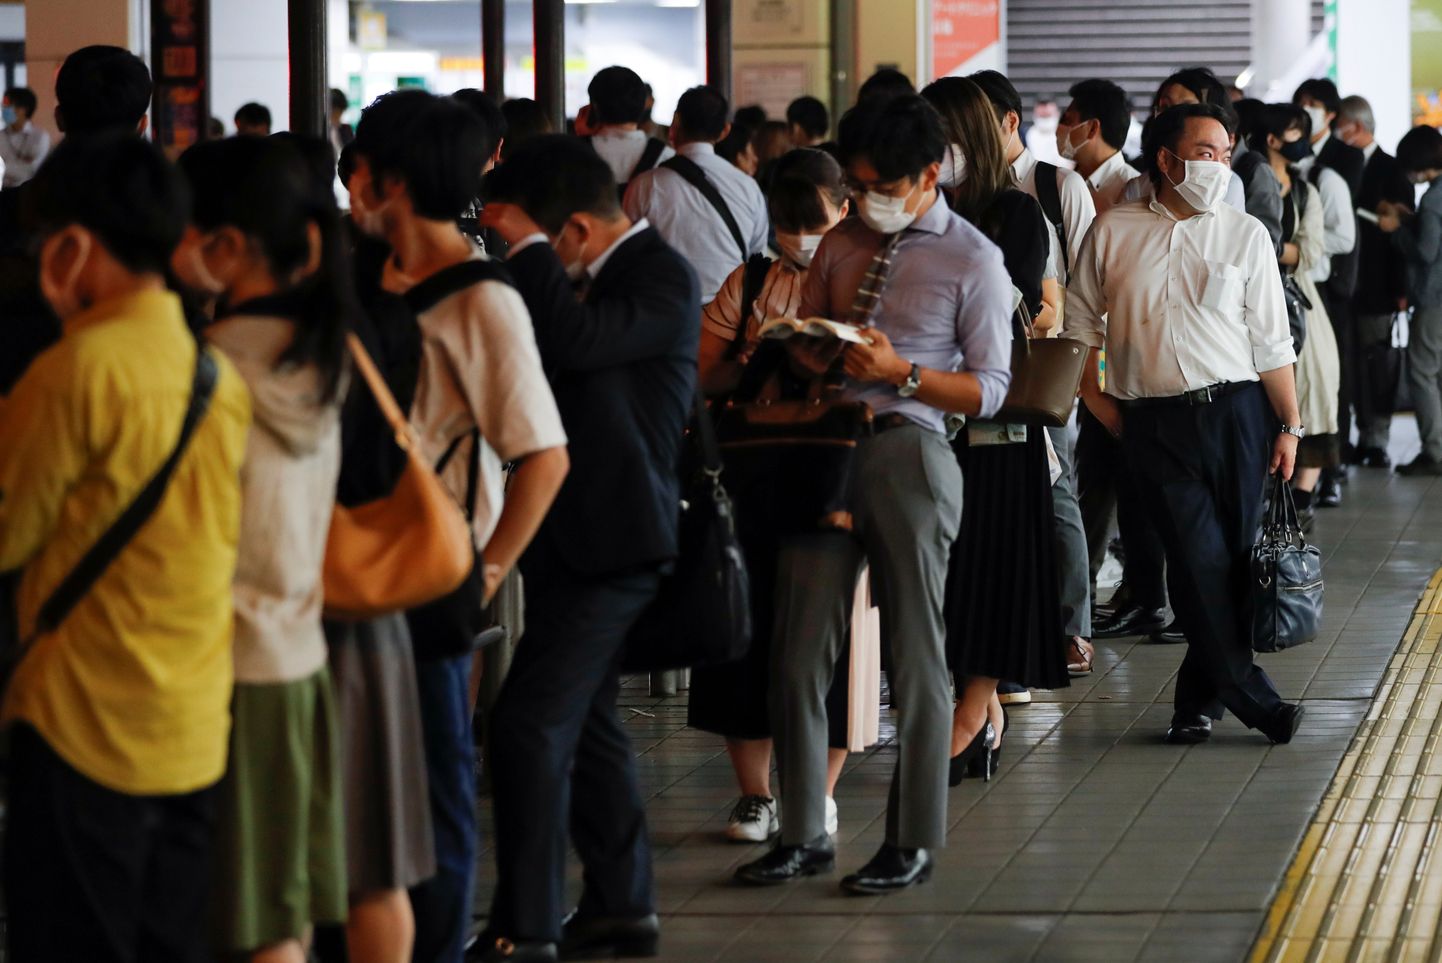 inimesed seisavad pärast maavärinat Tokyos taksojärjekorras, kuna ühistranspordis tekkisid häired.